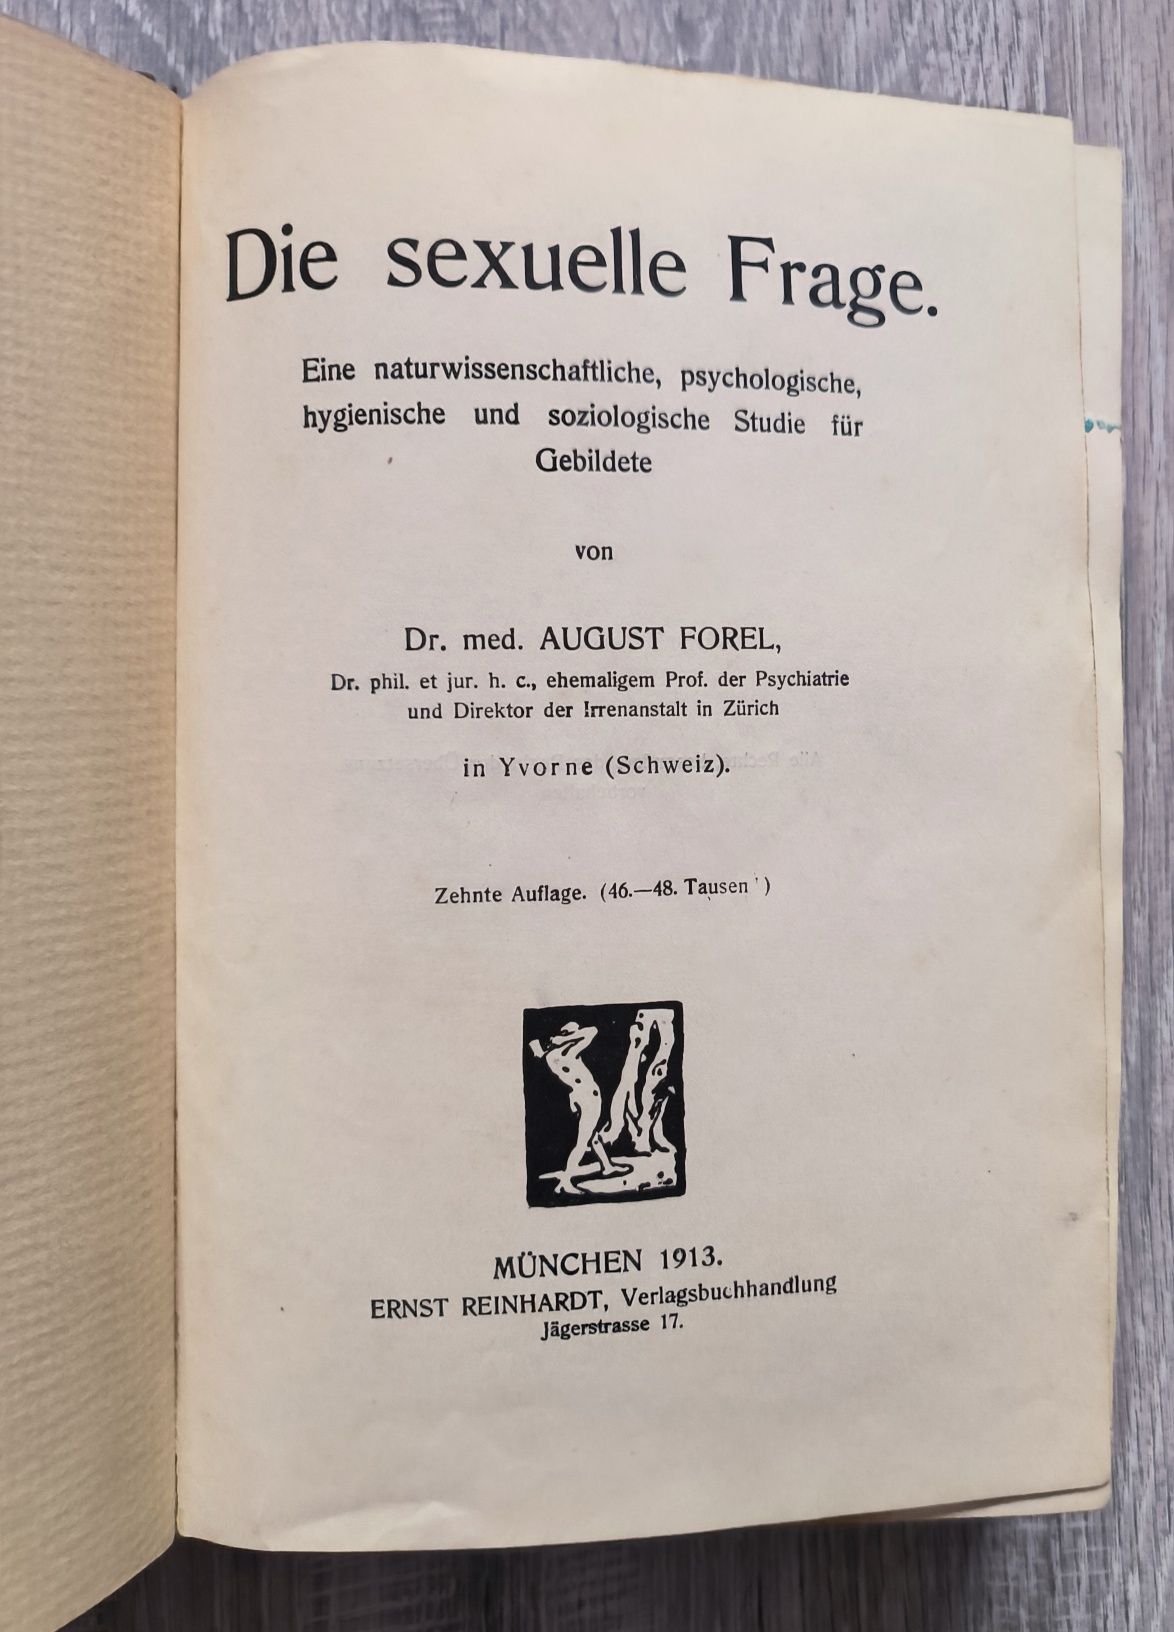 Die Sexuelle frage Forel 1913